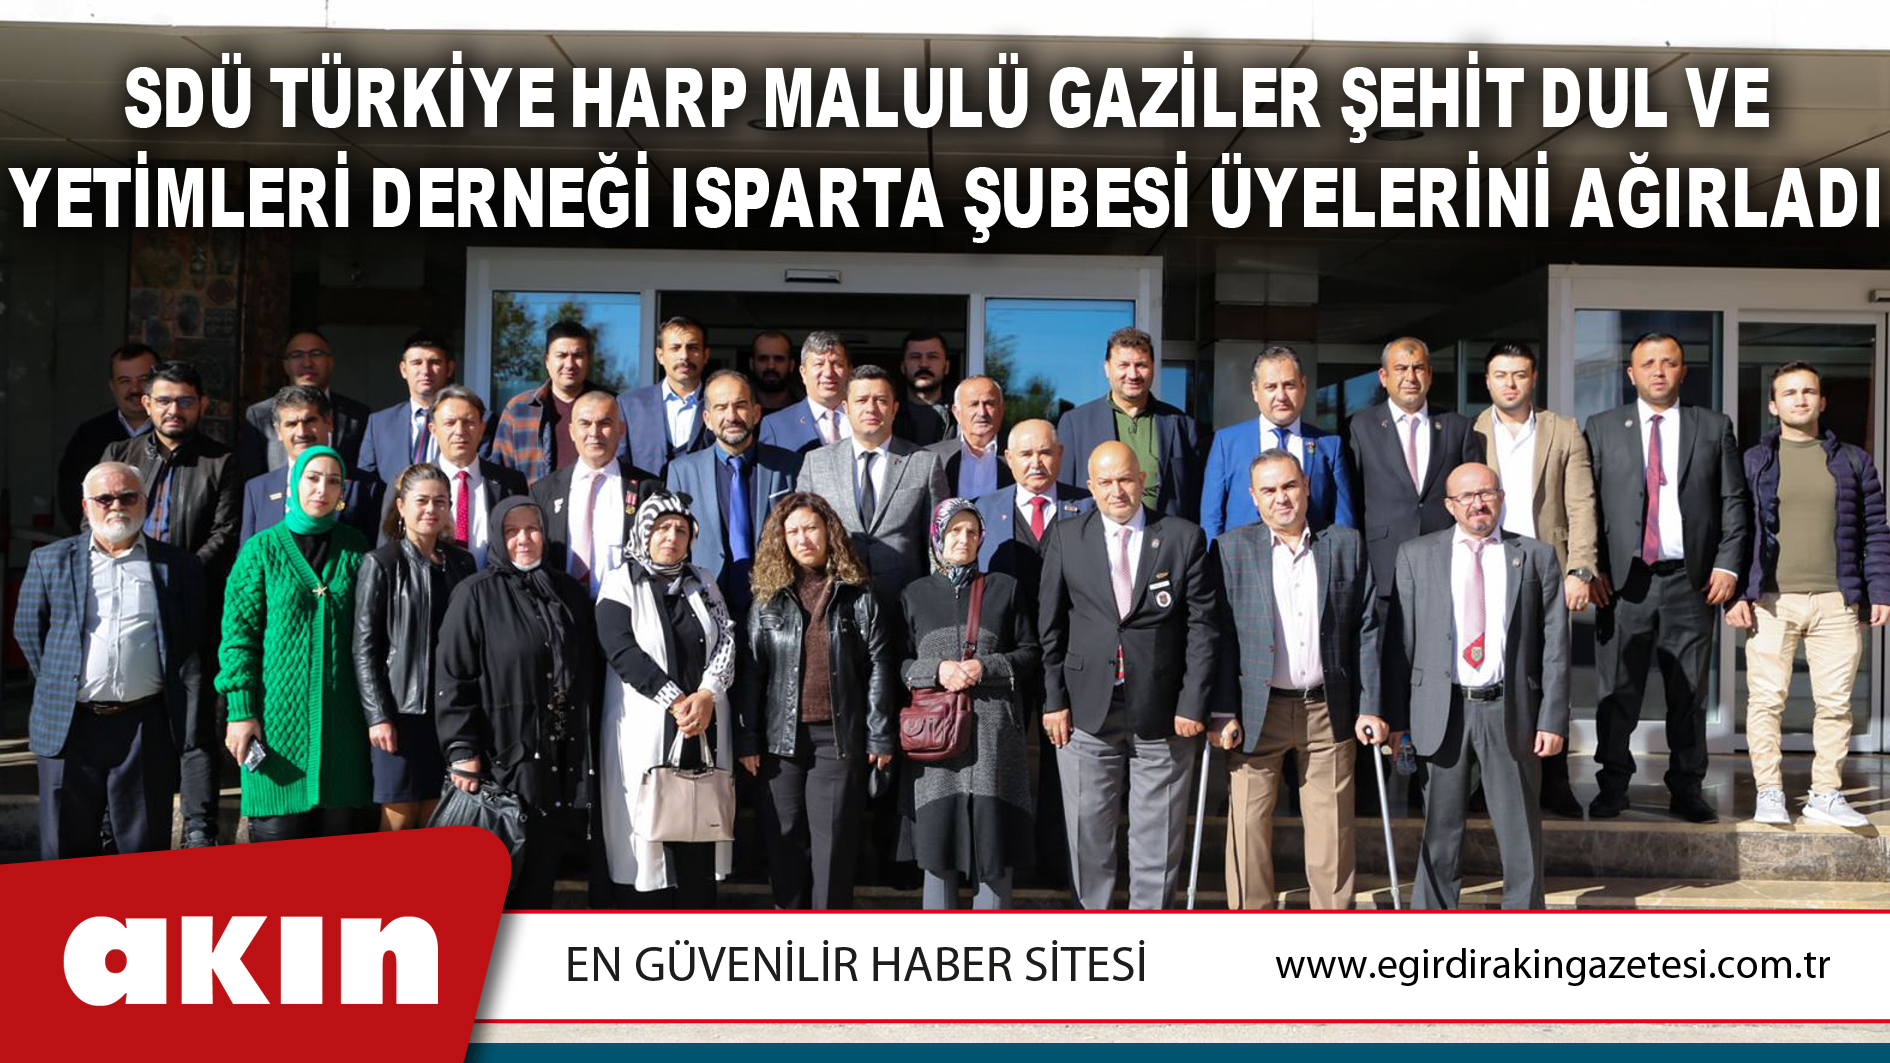 SDÜ Türkiye Harp Malulü Gaziler Şehit Dul ve Yetimleri Derneği Isparta Şubesi Üyelerini Ağırladı